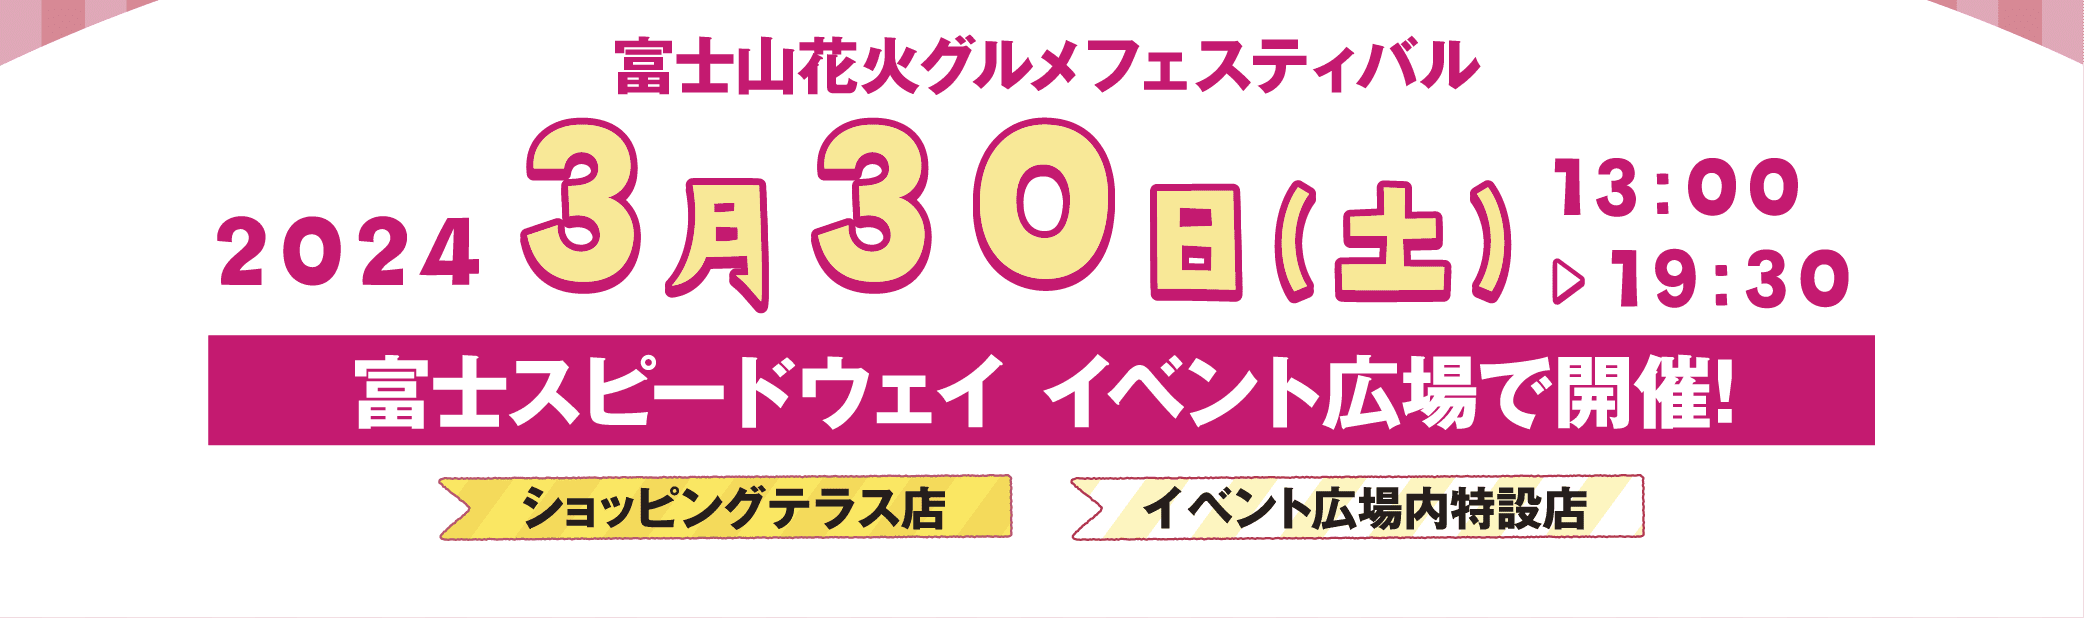 富士山花火 グルメフェスティバル 2024年3月30日 13:00～19:30 富士スピードウェイ イベント広場で開催！